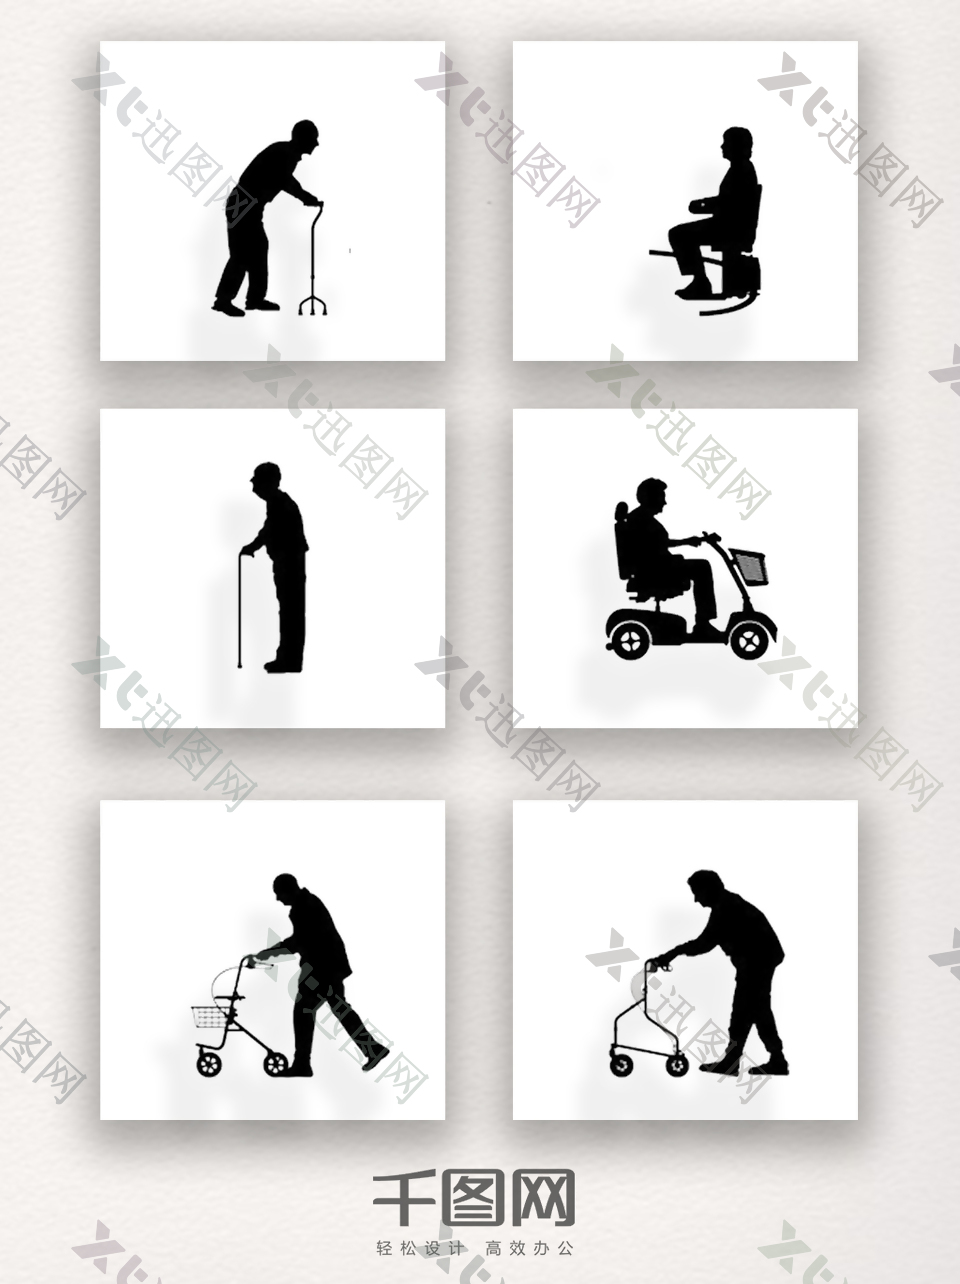 关爱残疾老人世界残疾人日设计组图